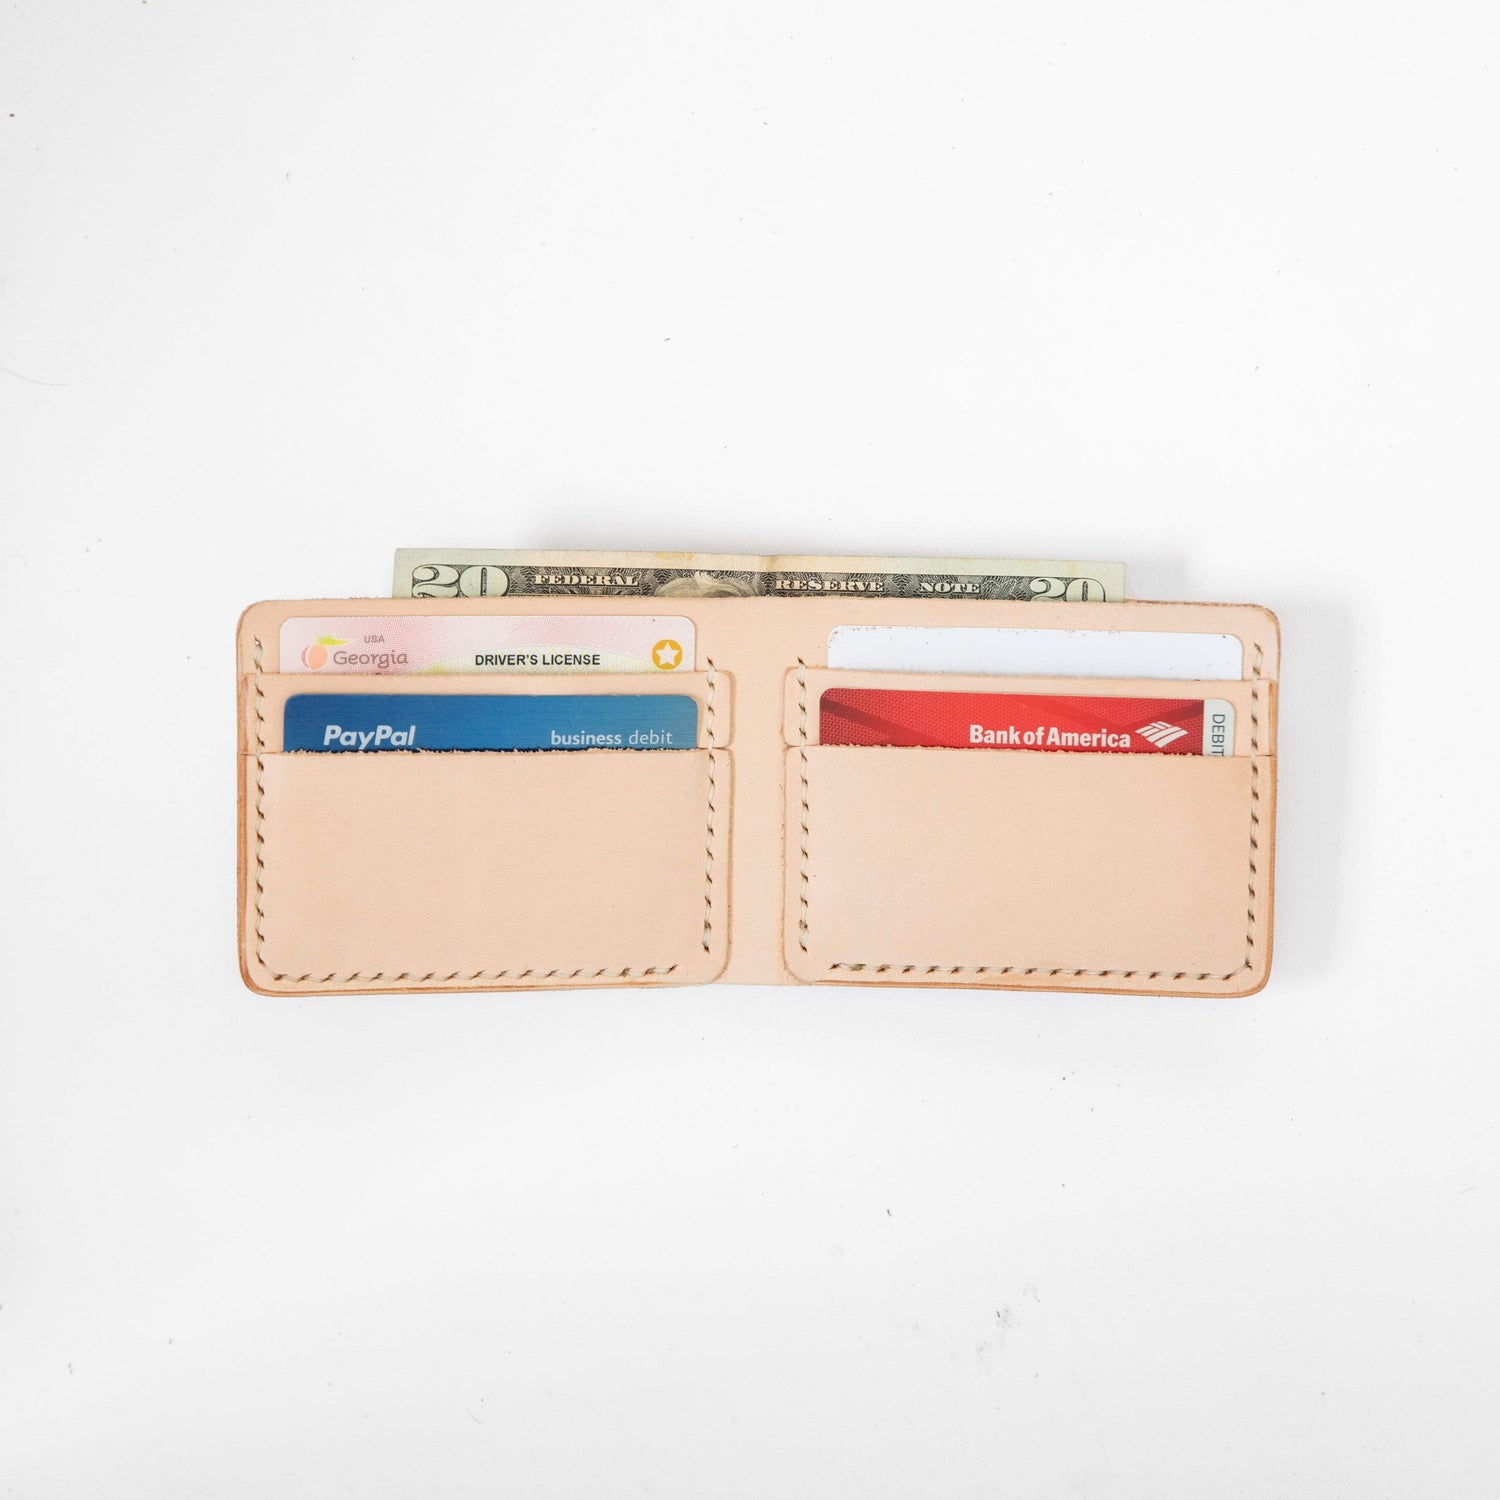 KMM & Co Men's Leather Billfold Wallet